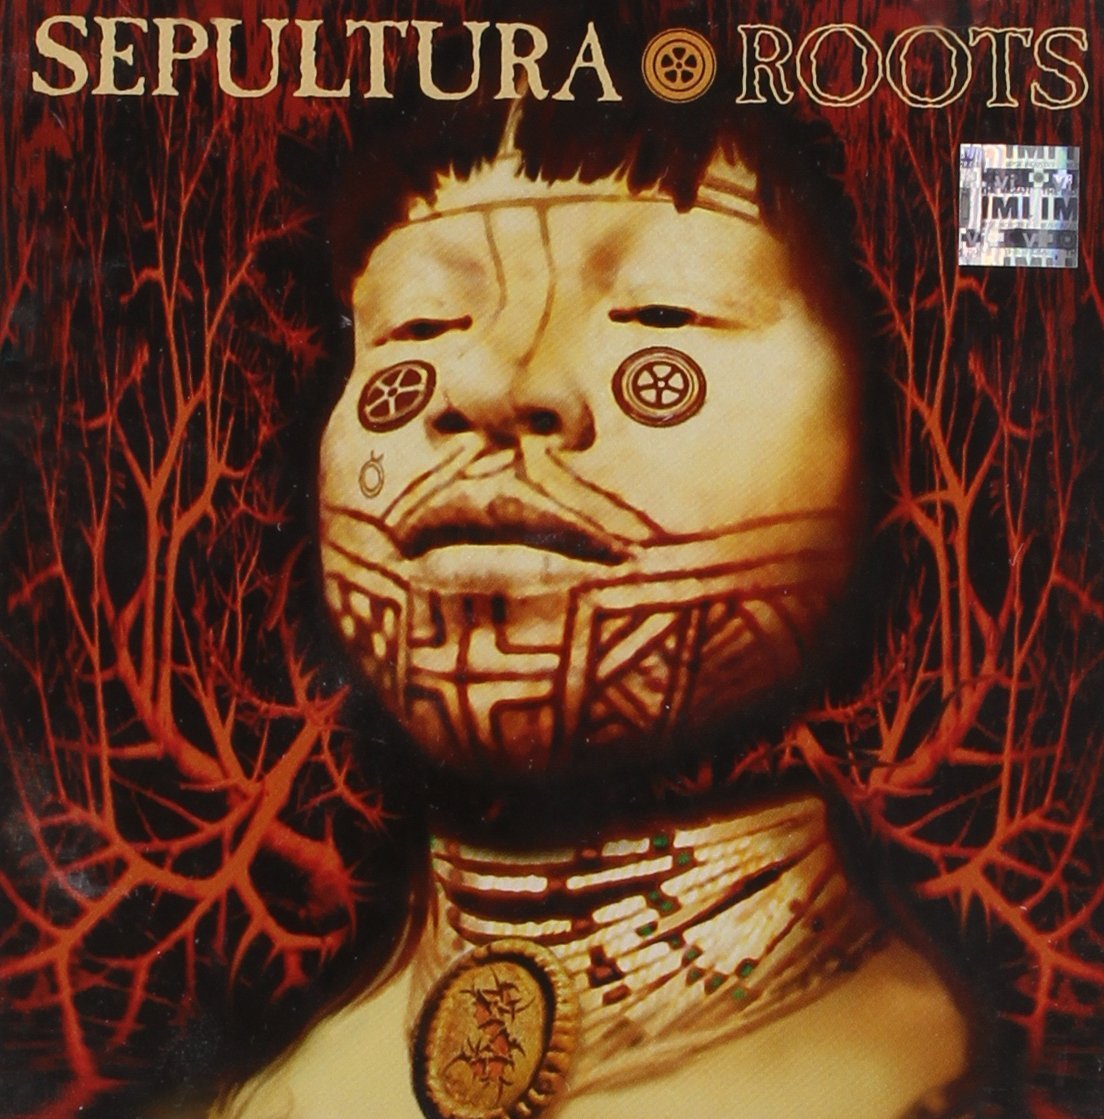 Sepultura "Roots" Deluxe Gatefold 2x12" Vinyl